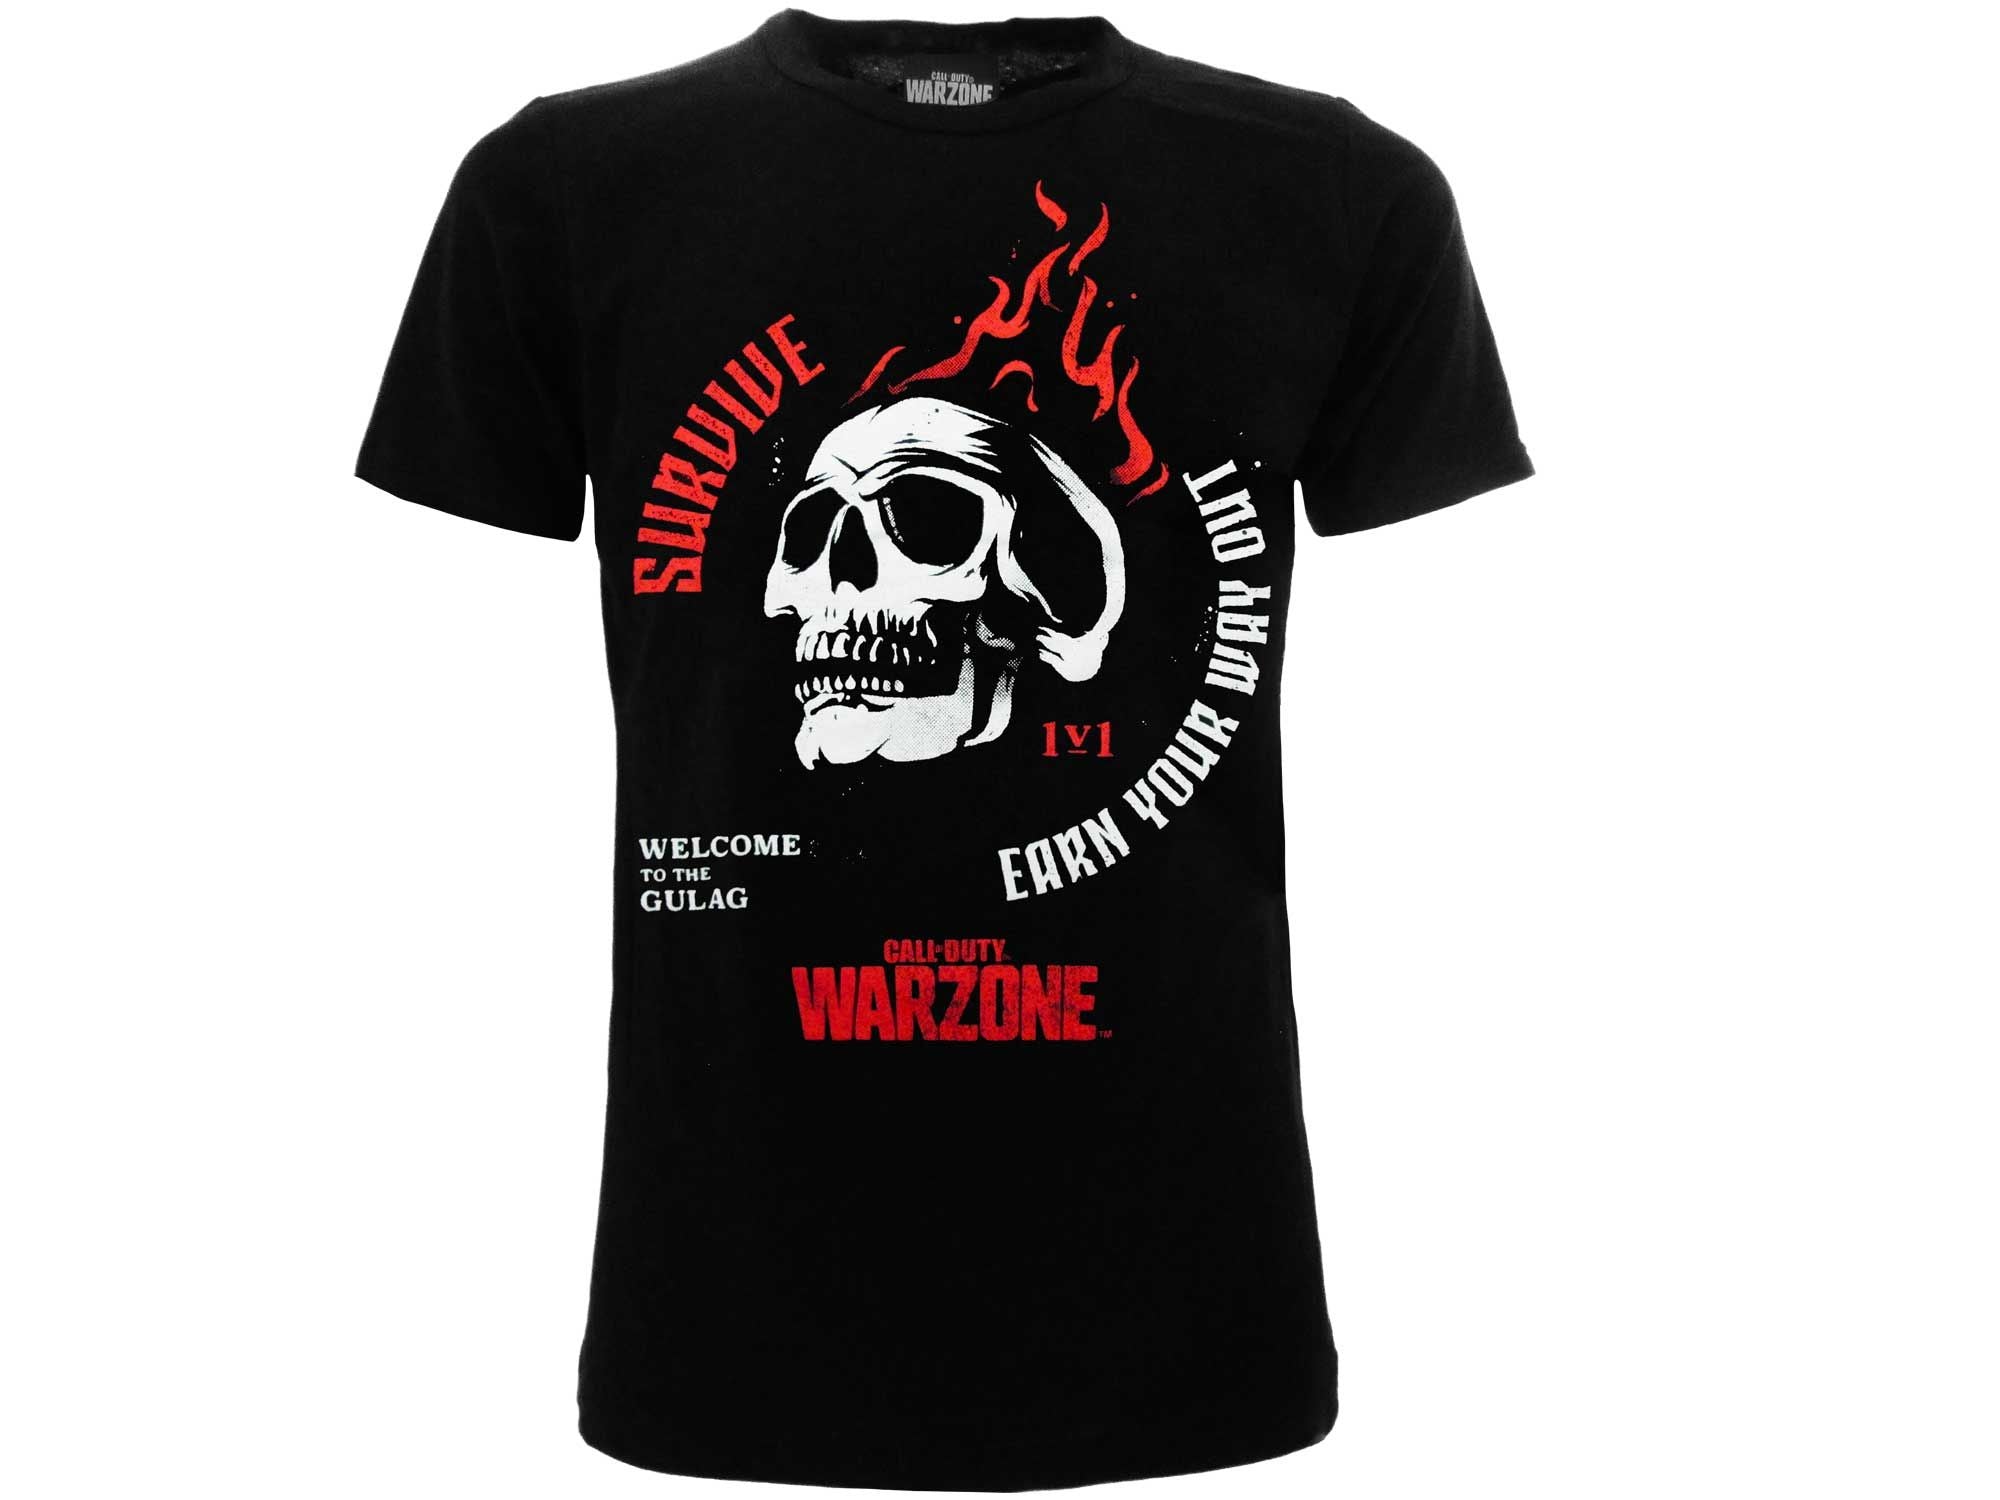 CALL OF DUTY: WARZONE - T-shirt Gulag S nera - Disponibile in 2/3 giorni lavorativi